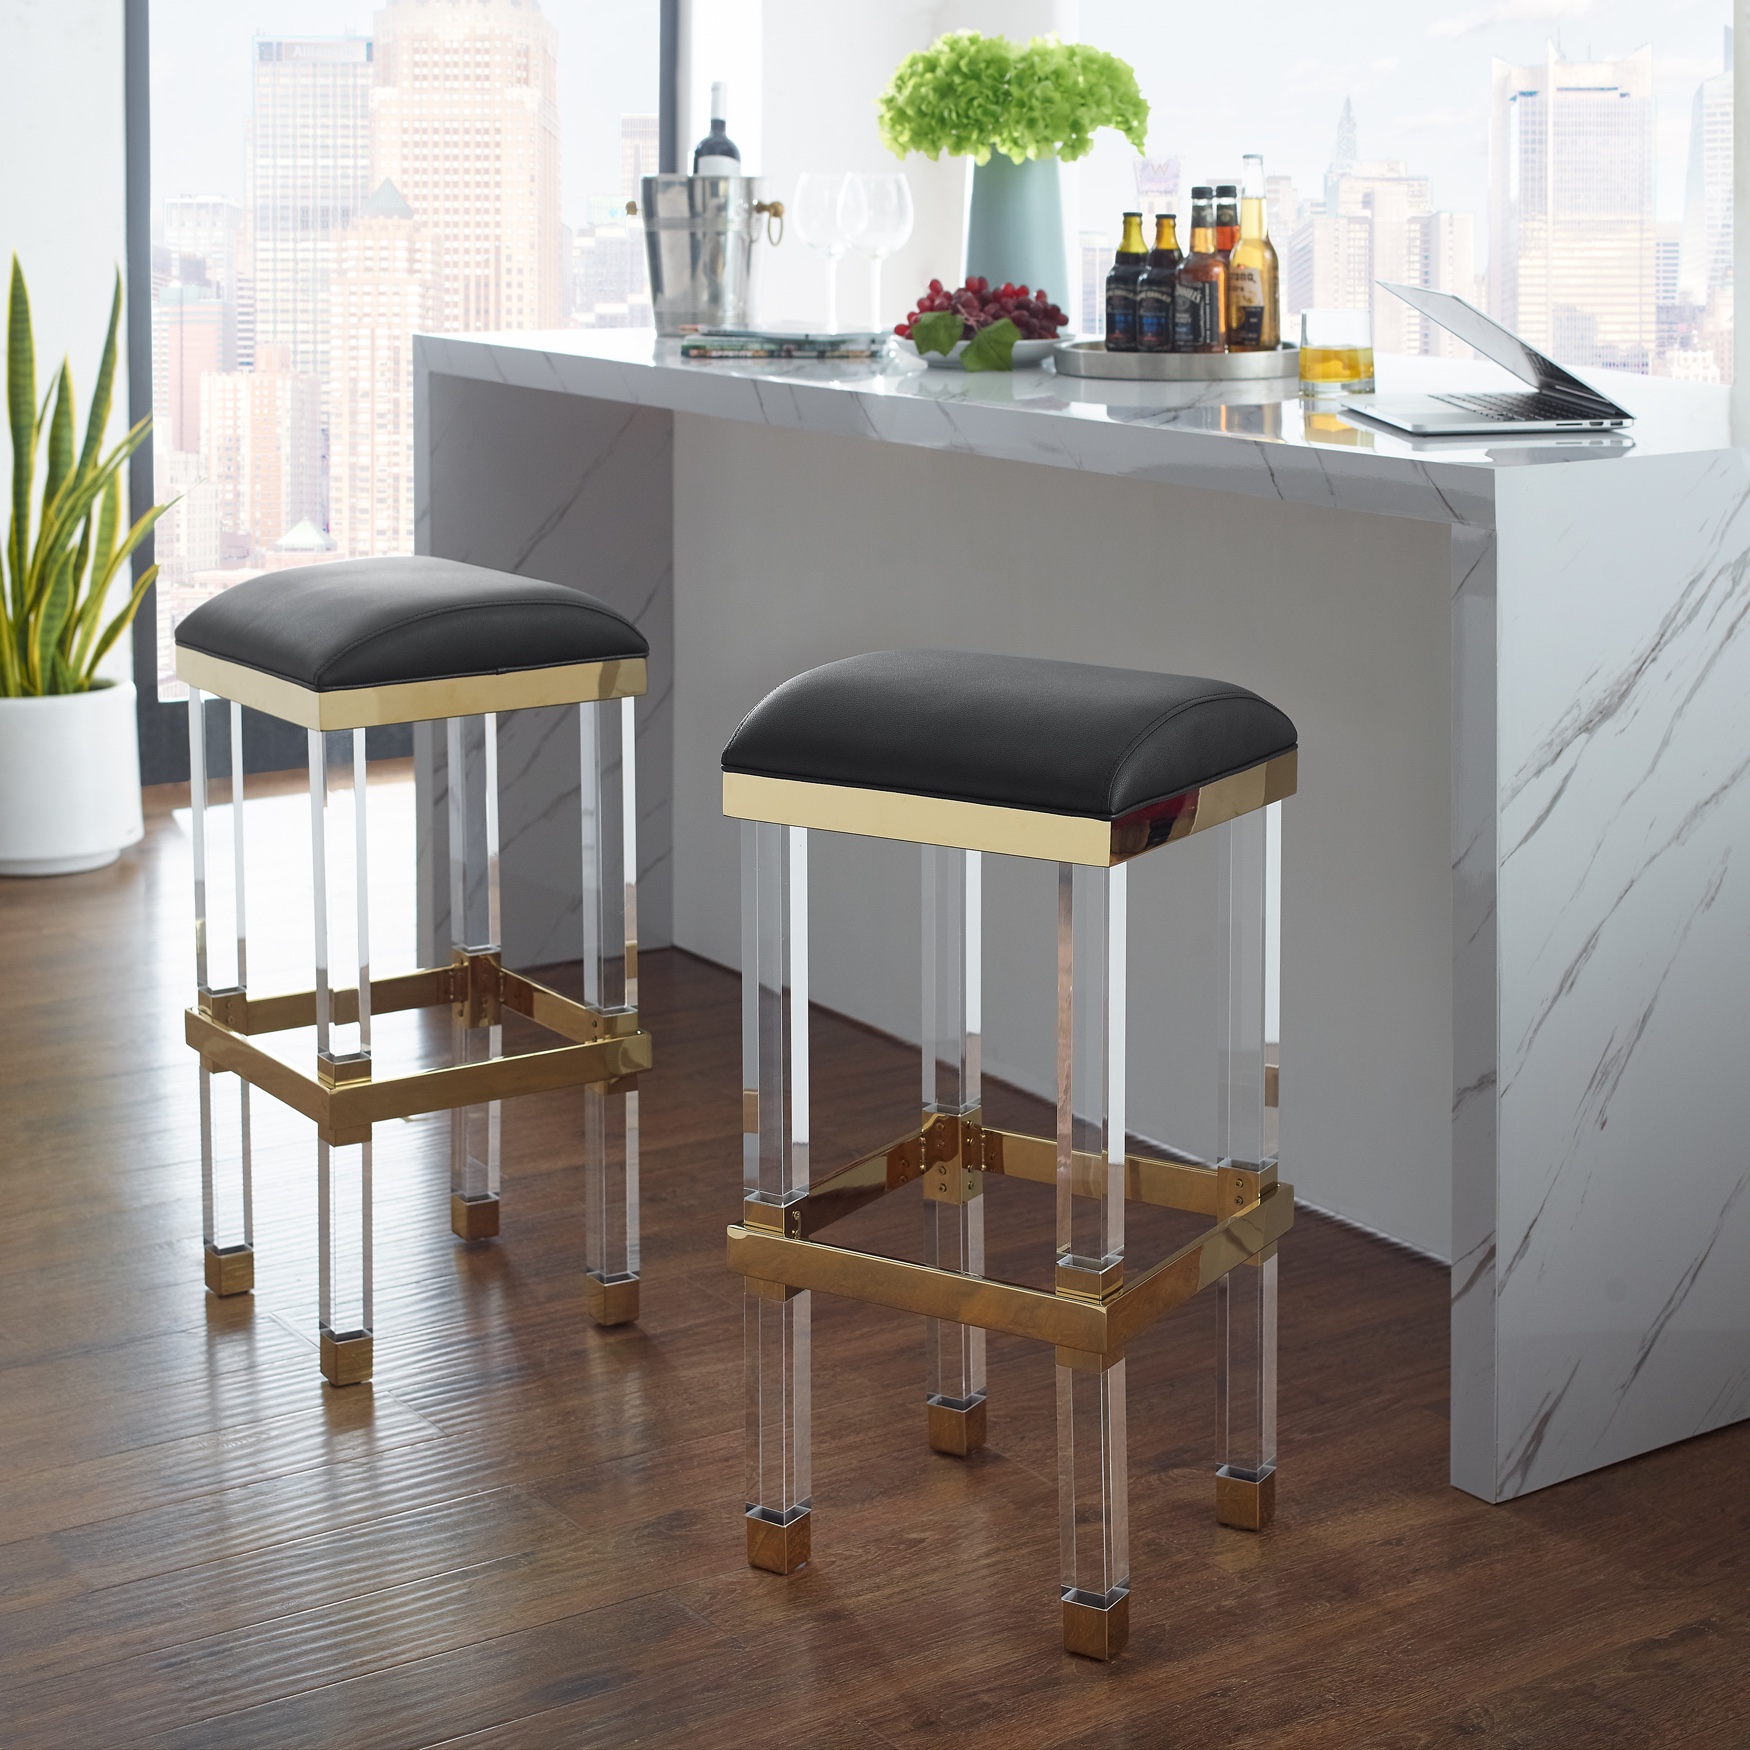 acrylic bar stools